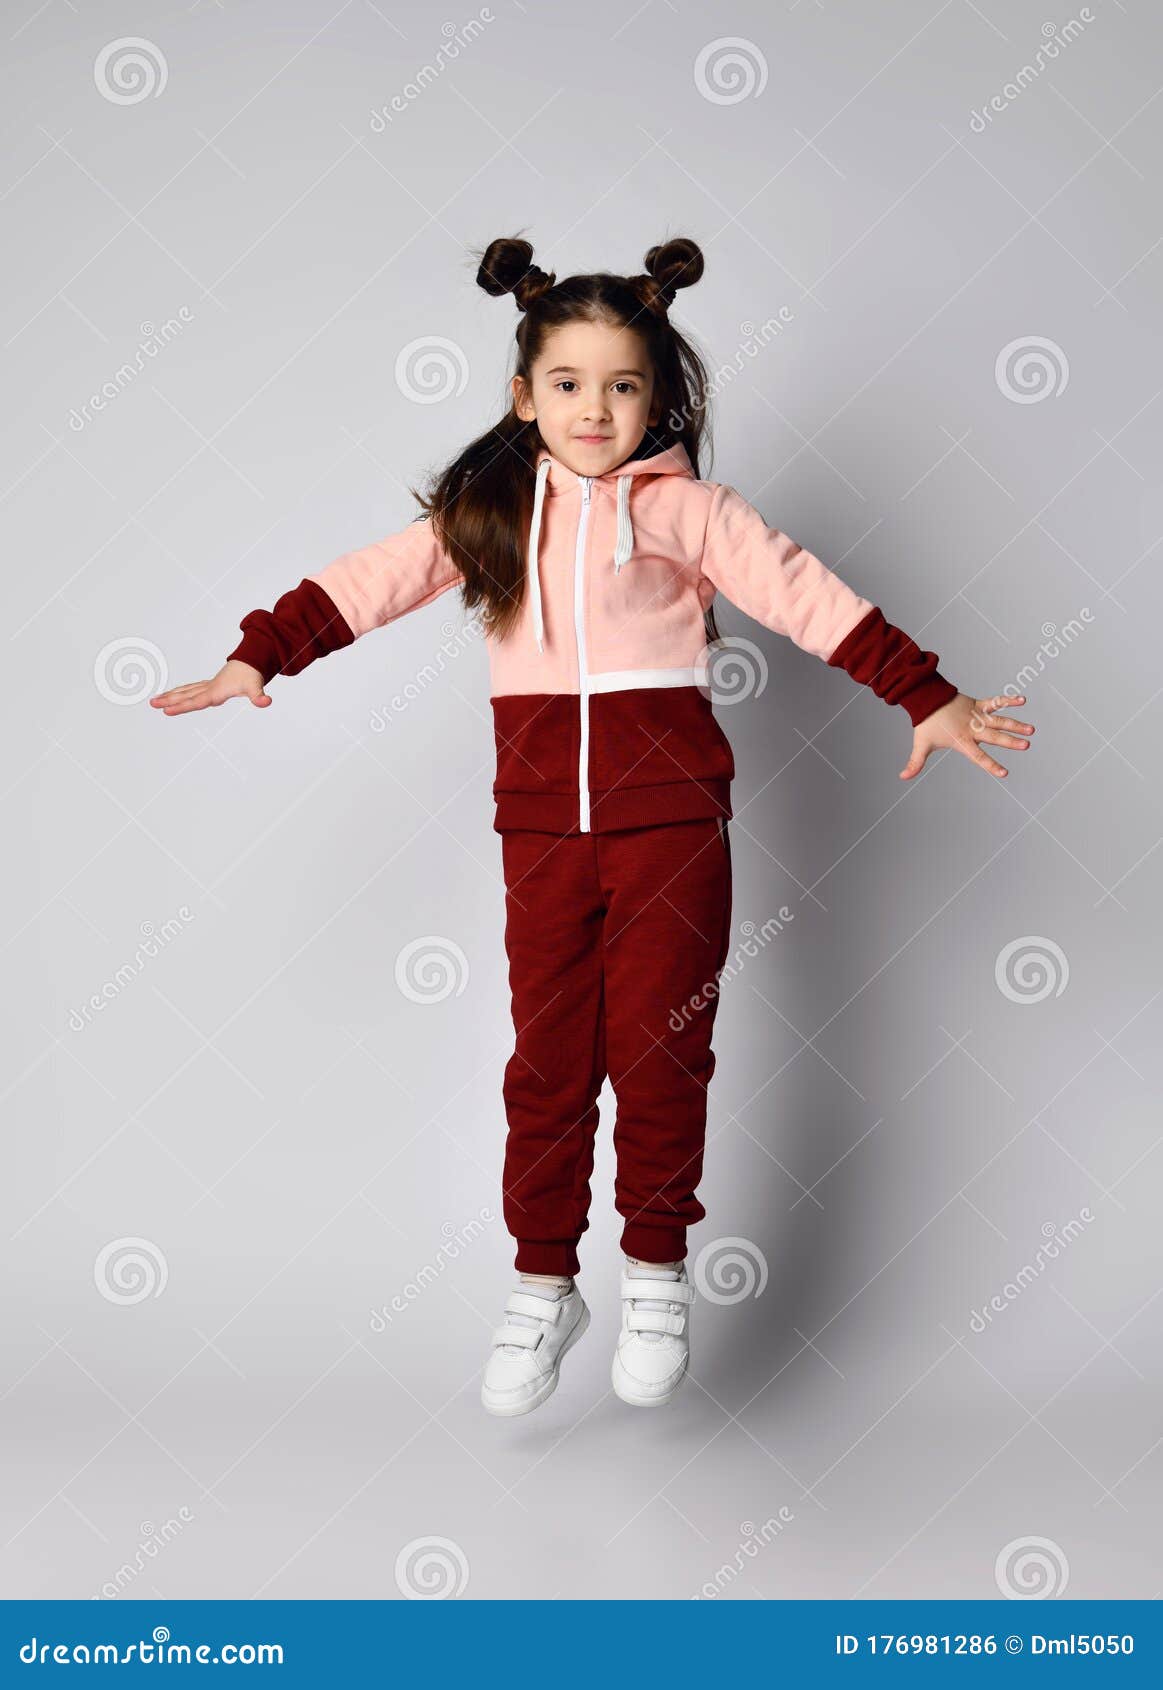 frolic brunette kid girl in modern fashion pink brown sportwear is jumping having fun